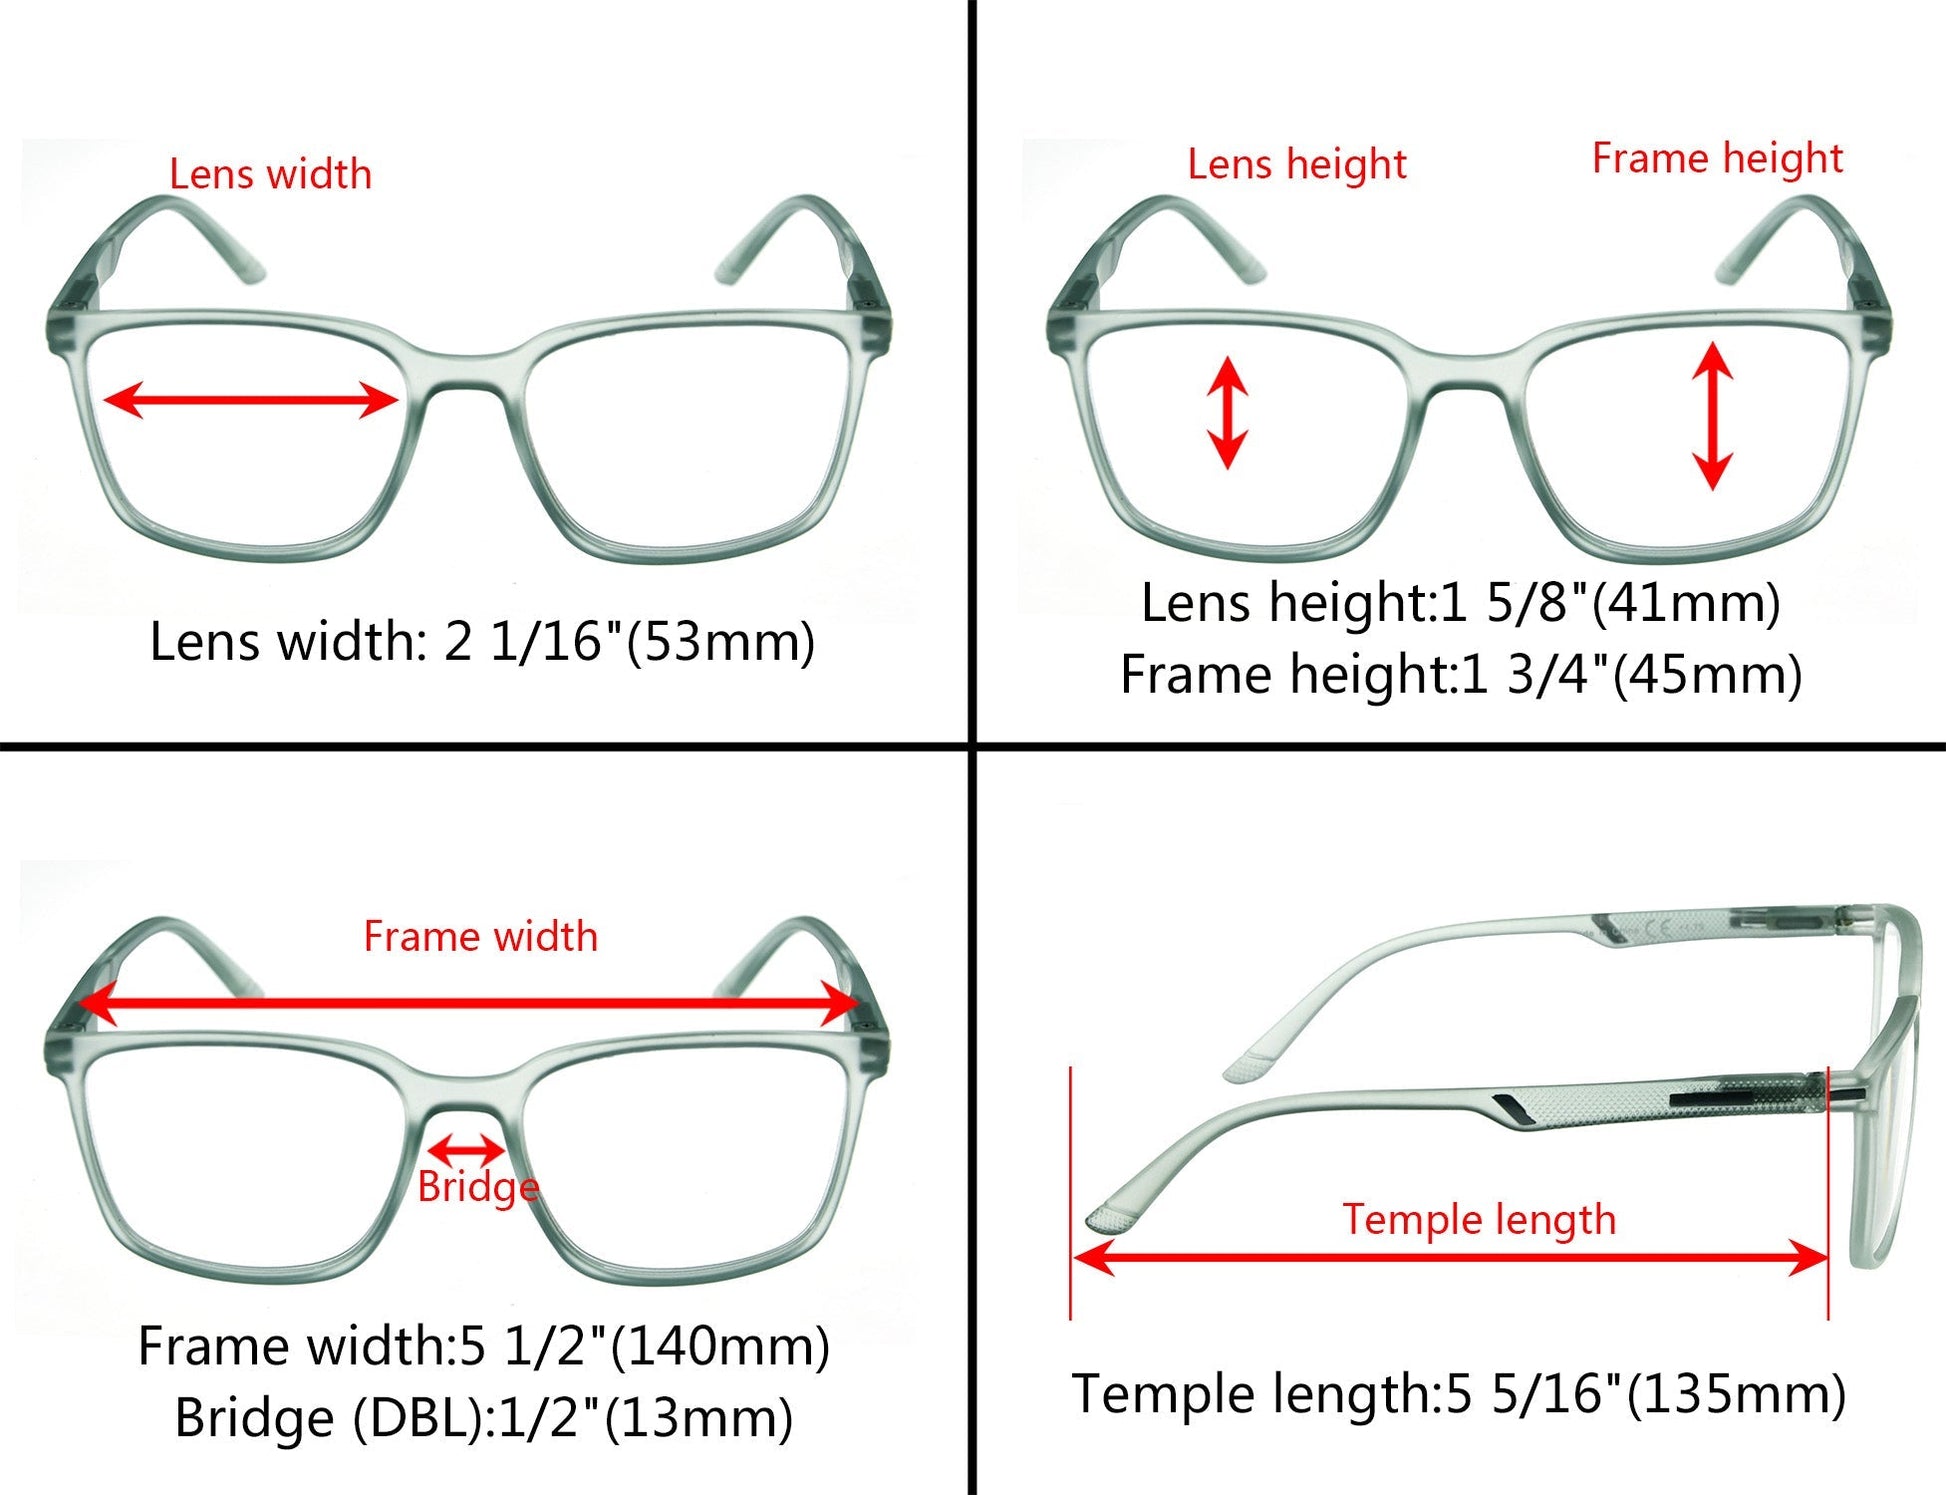 Fashionable Large Frame Reading Glasses for Women Men R151